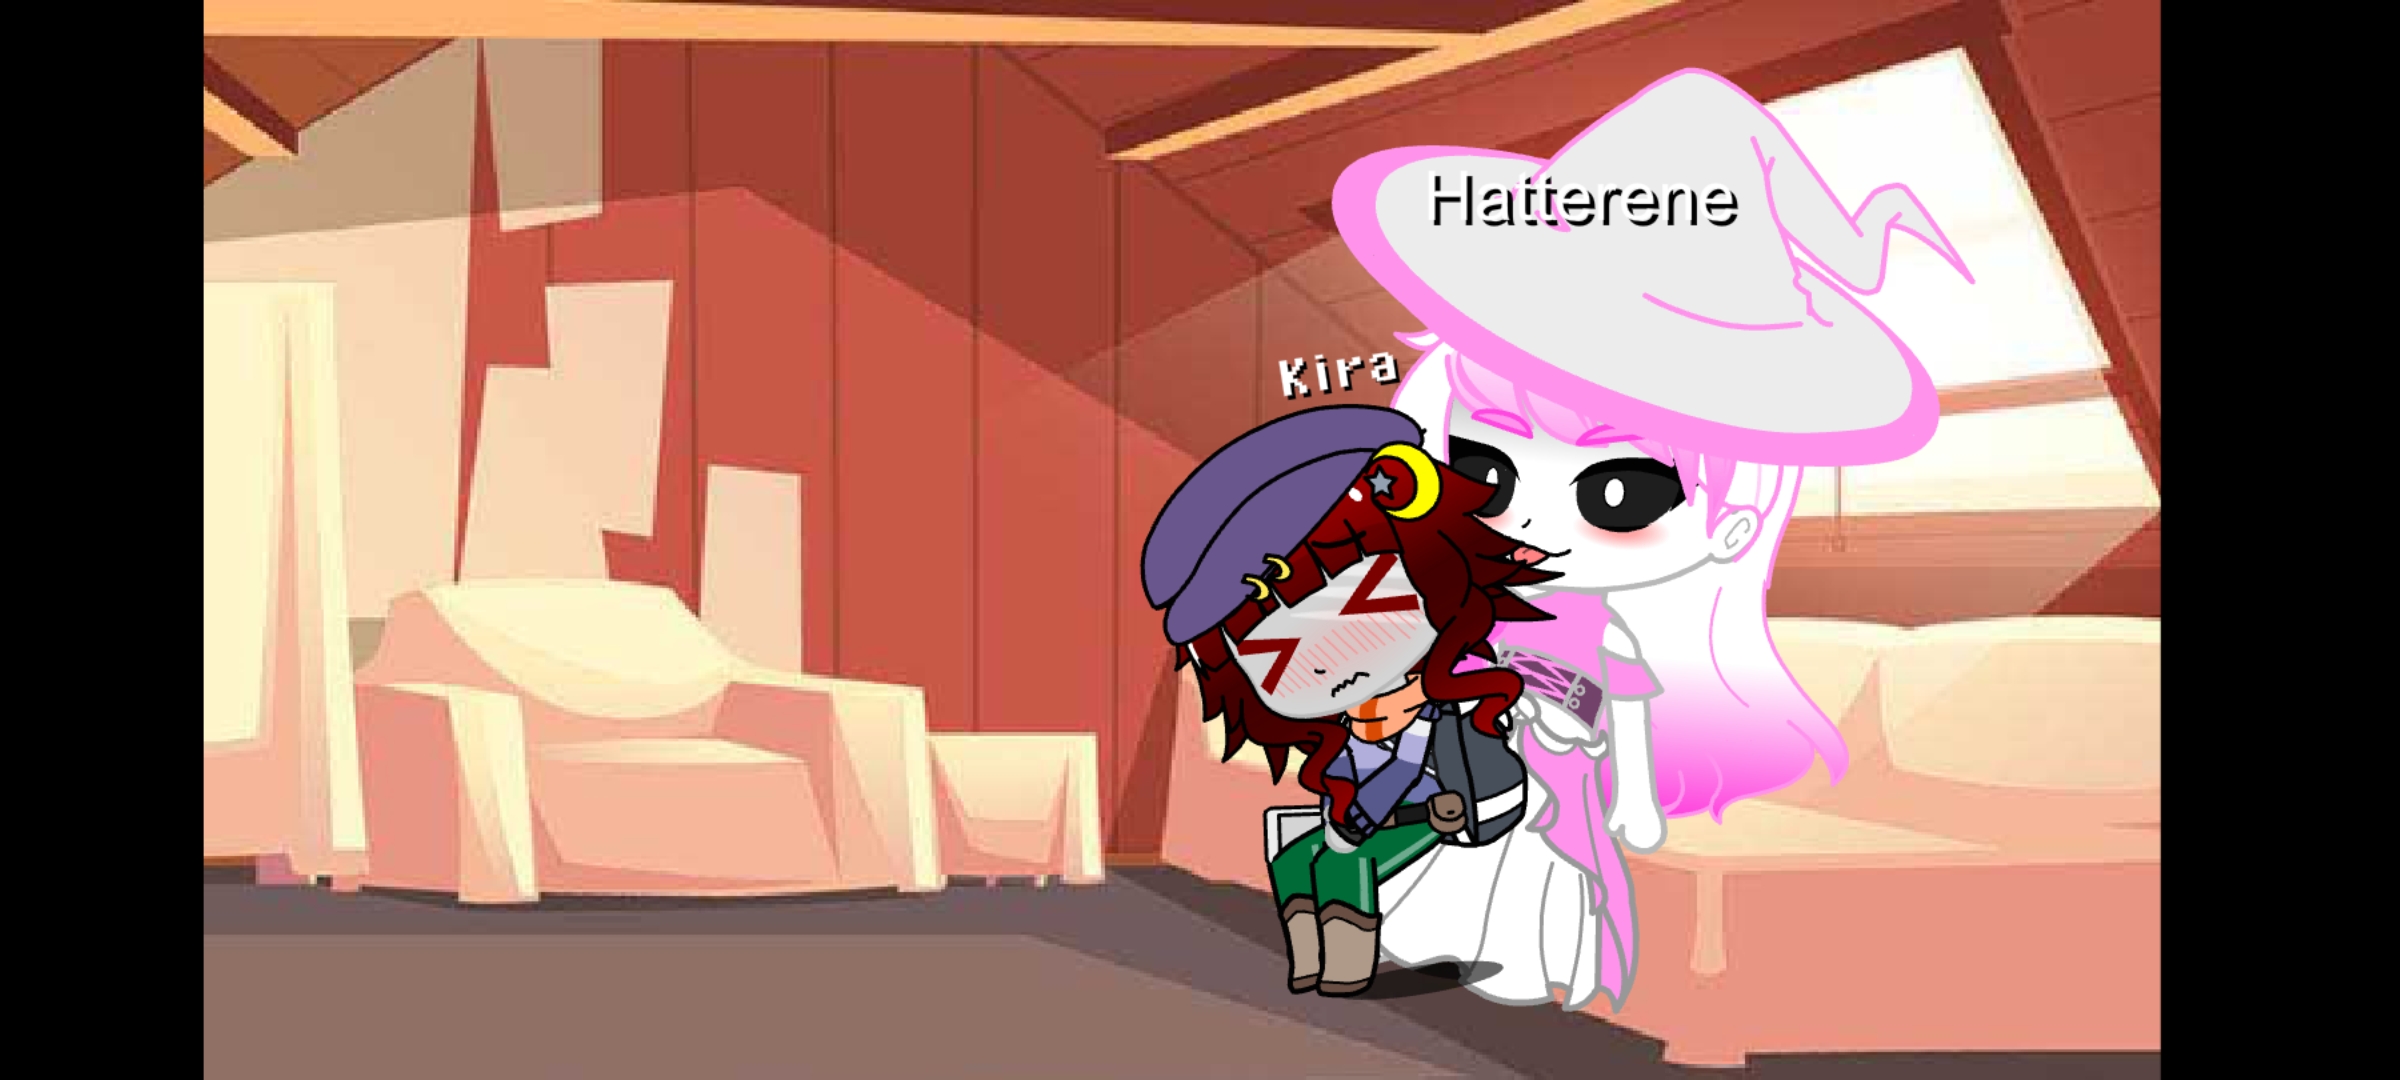 Kira's lost her domination against tall shiny Hatterene